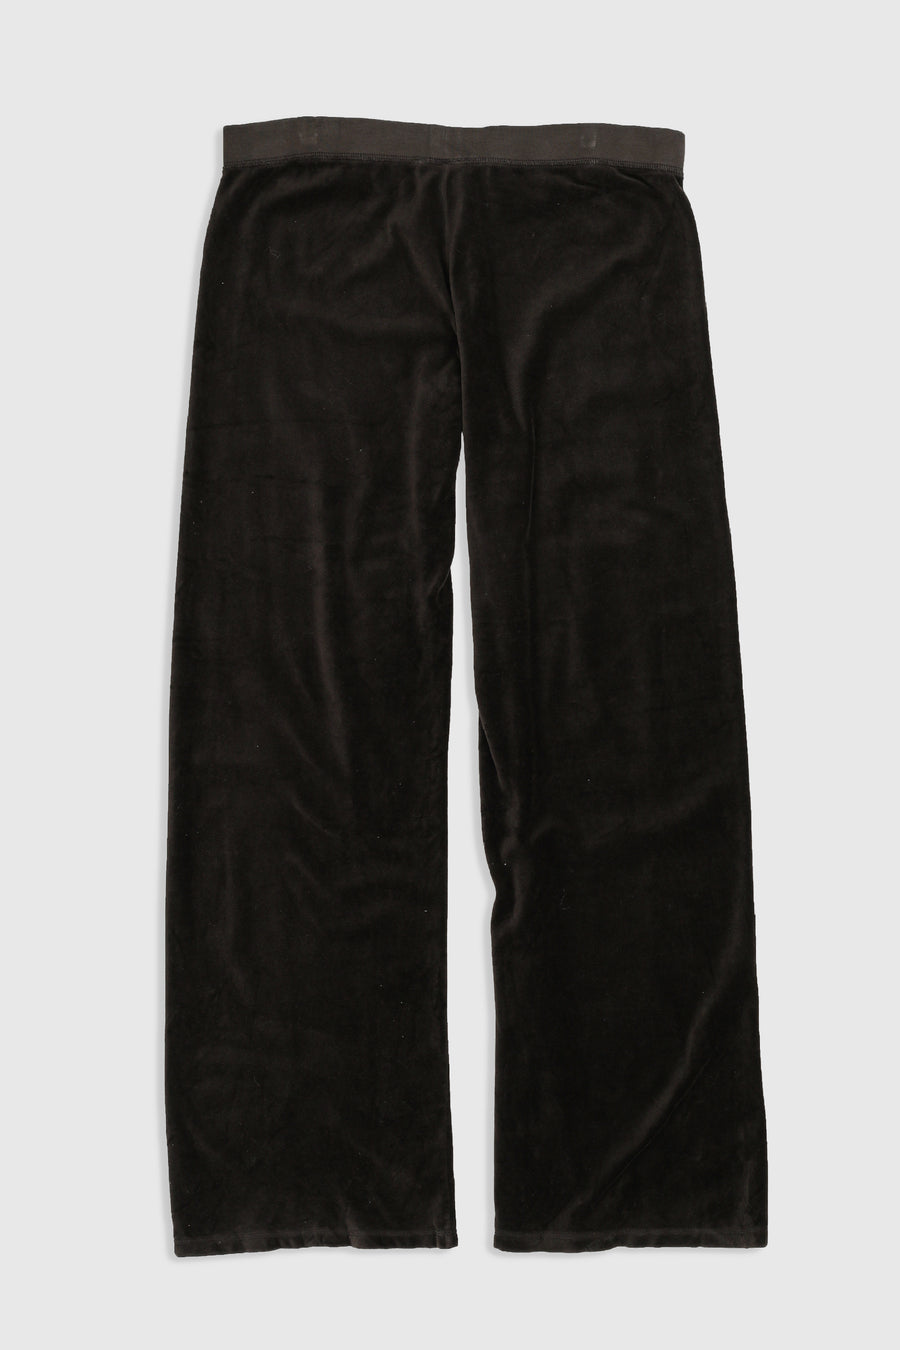 Vintage Juicy Couture Velour Pants - L